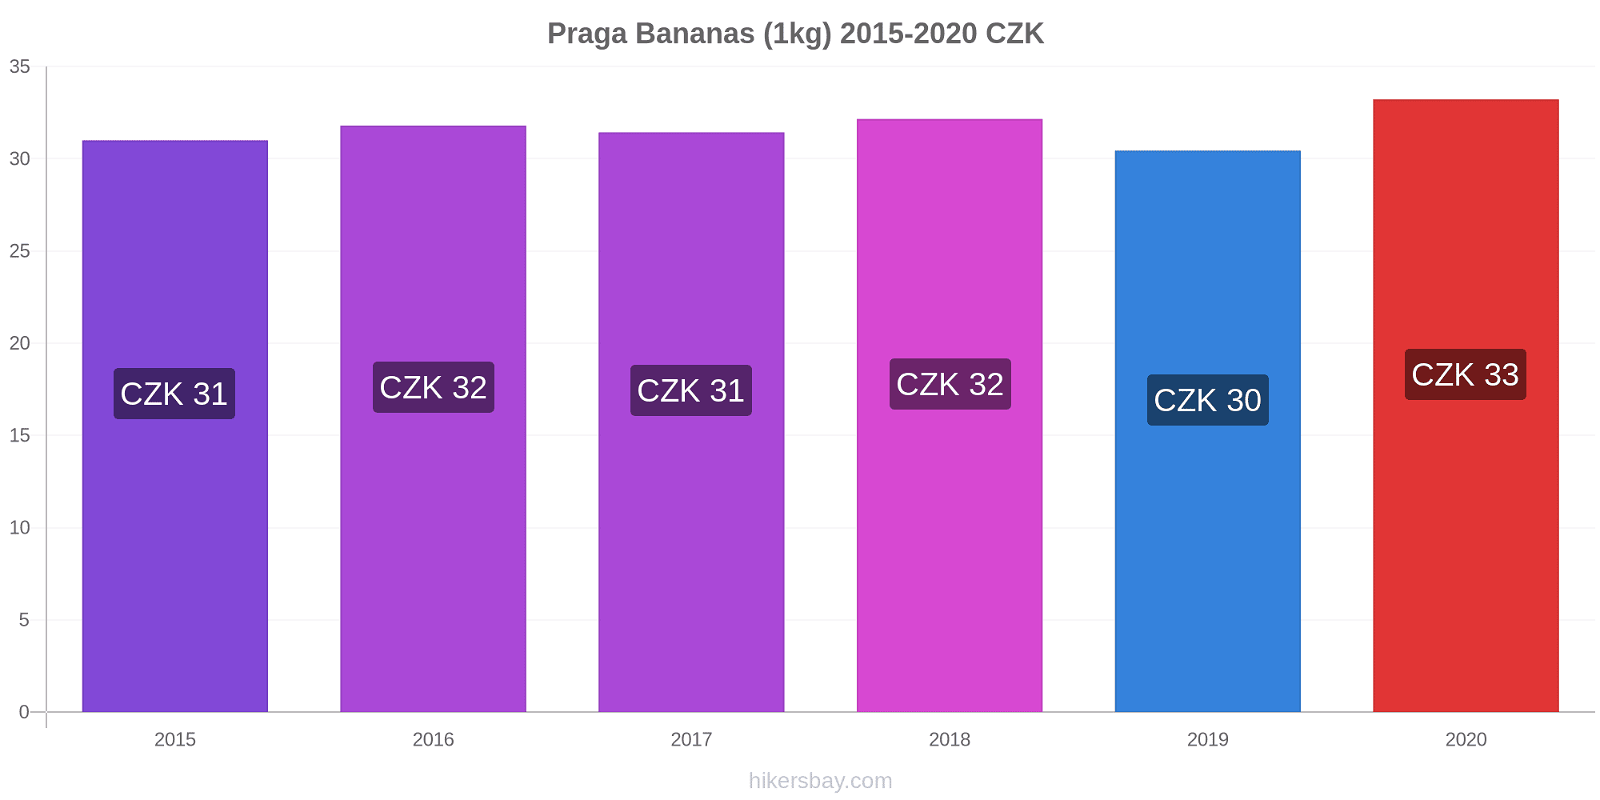 Praga variação de preço Banana (1kg) hikersbay.com